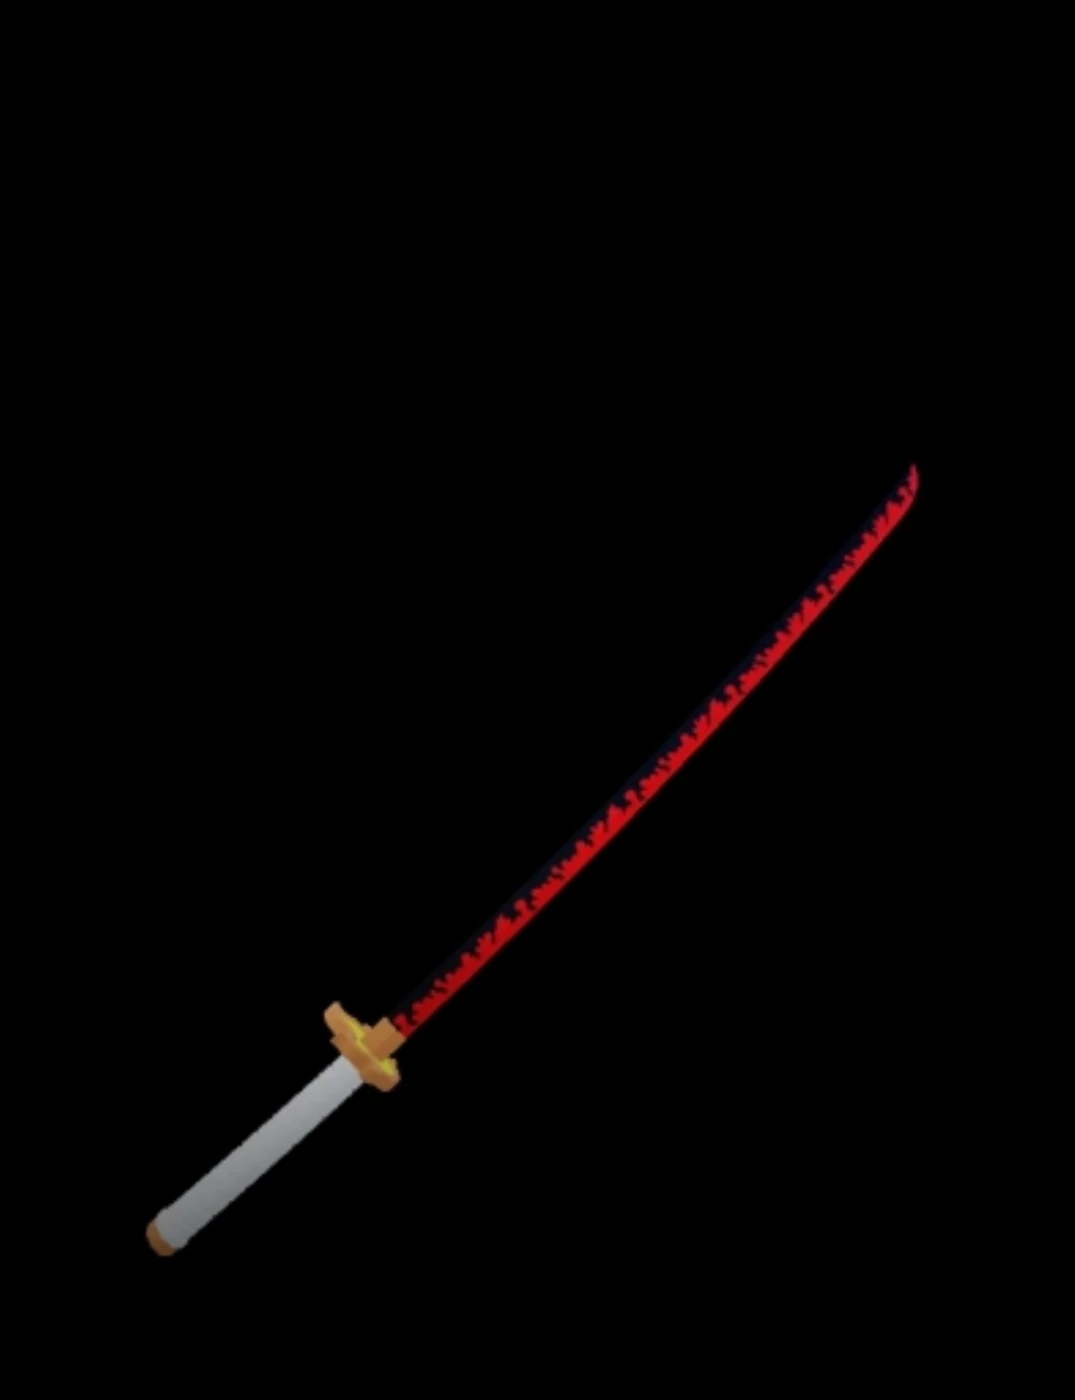 Roblox: How to Get Rengoku Sword in Blox Fruits